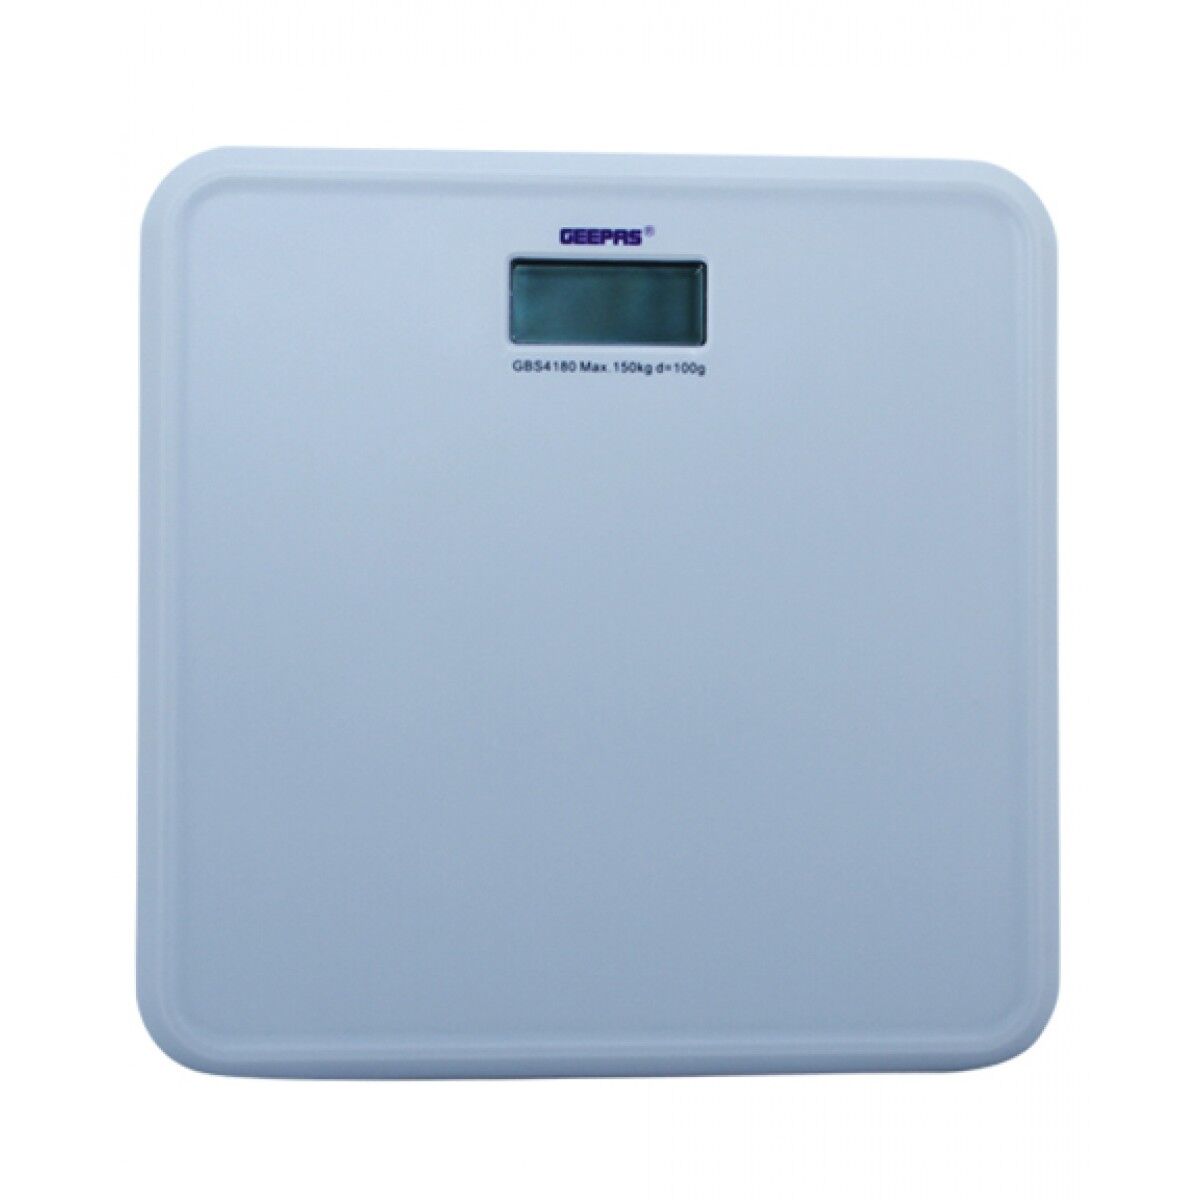 Geepas Digital Weight Scale